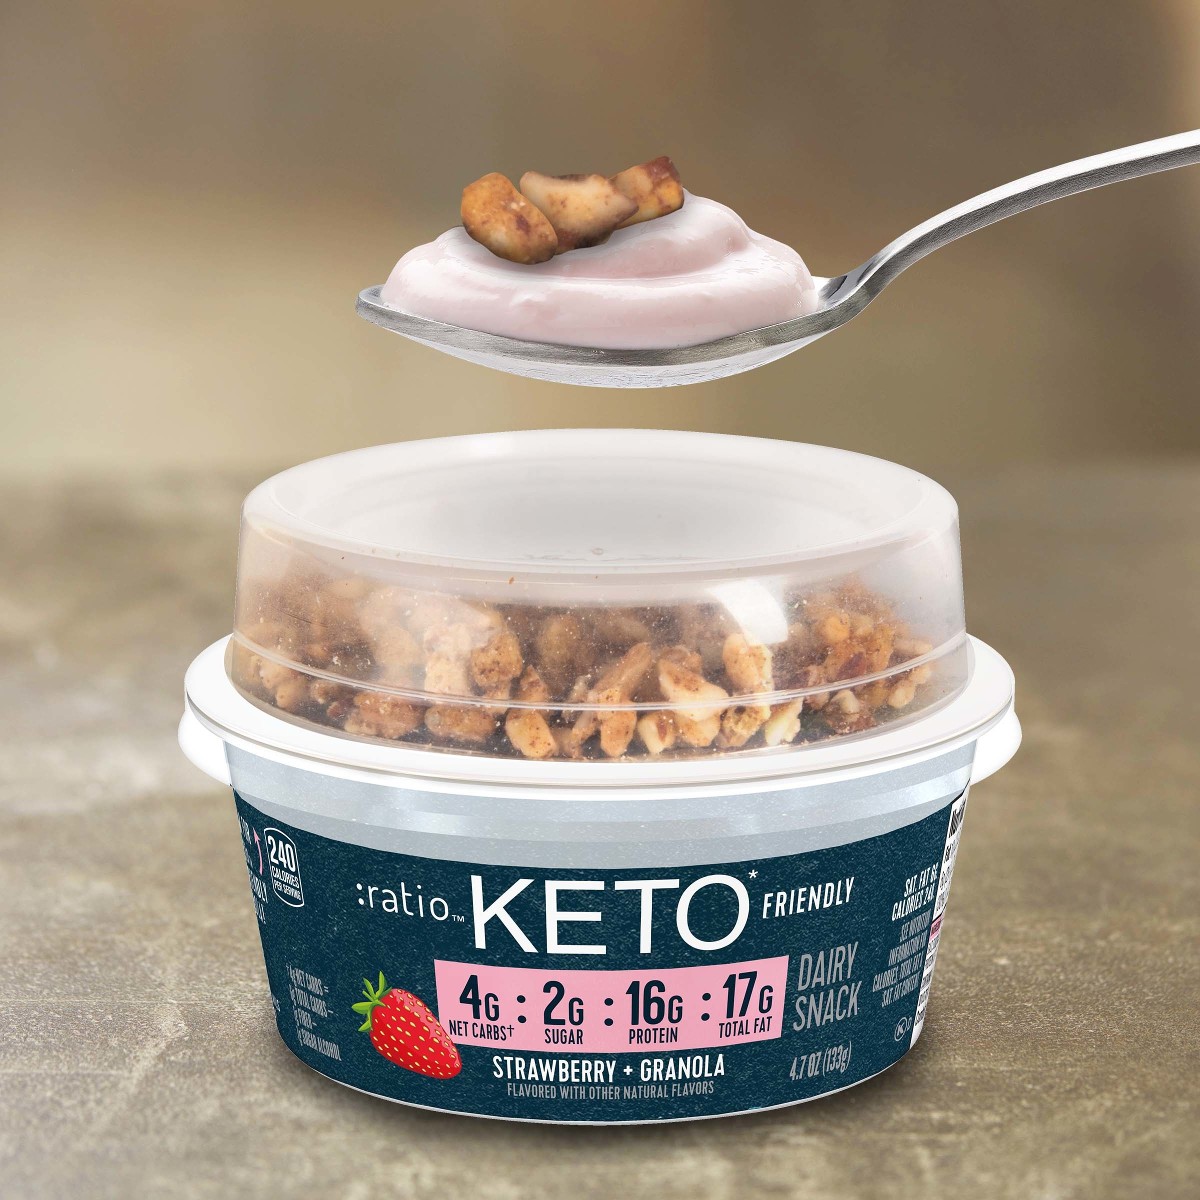 ratio Keto Friendly Strawberry & Granola Lifestyle protein less sugar